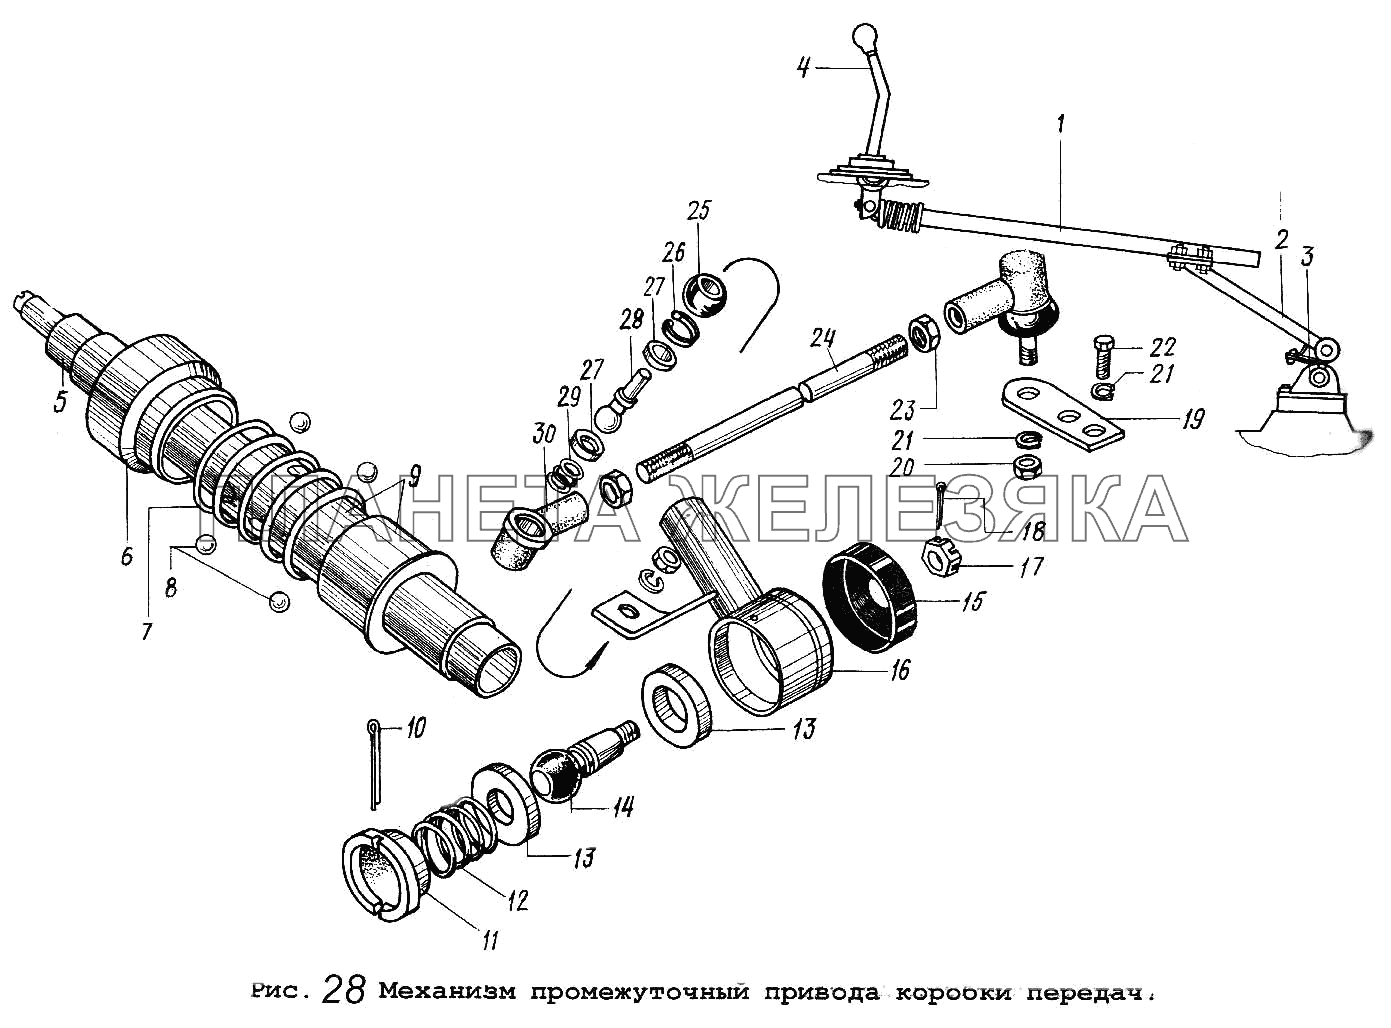 Механизм промежуточный привода коробки передач МАЗ-54323